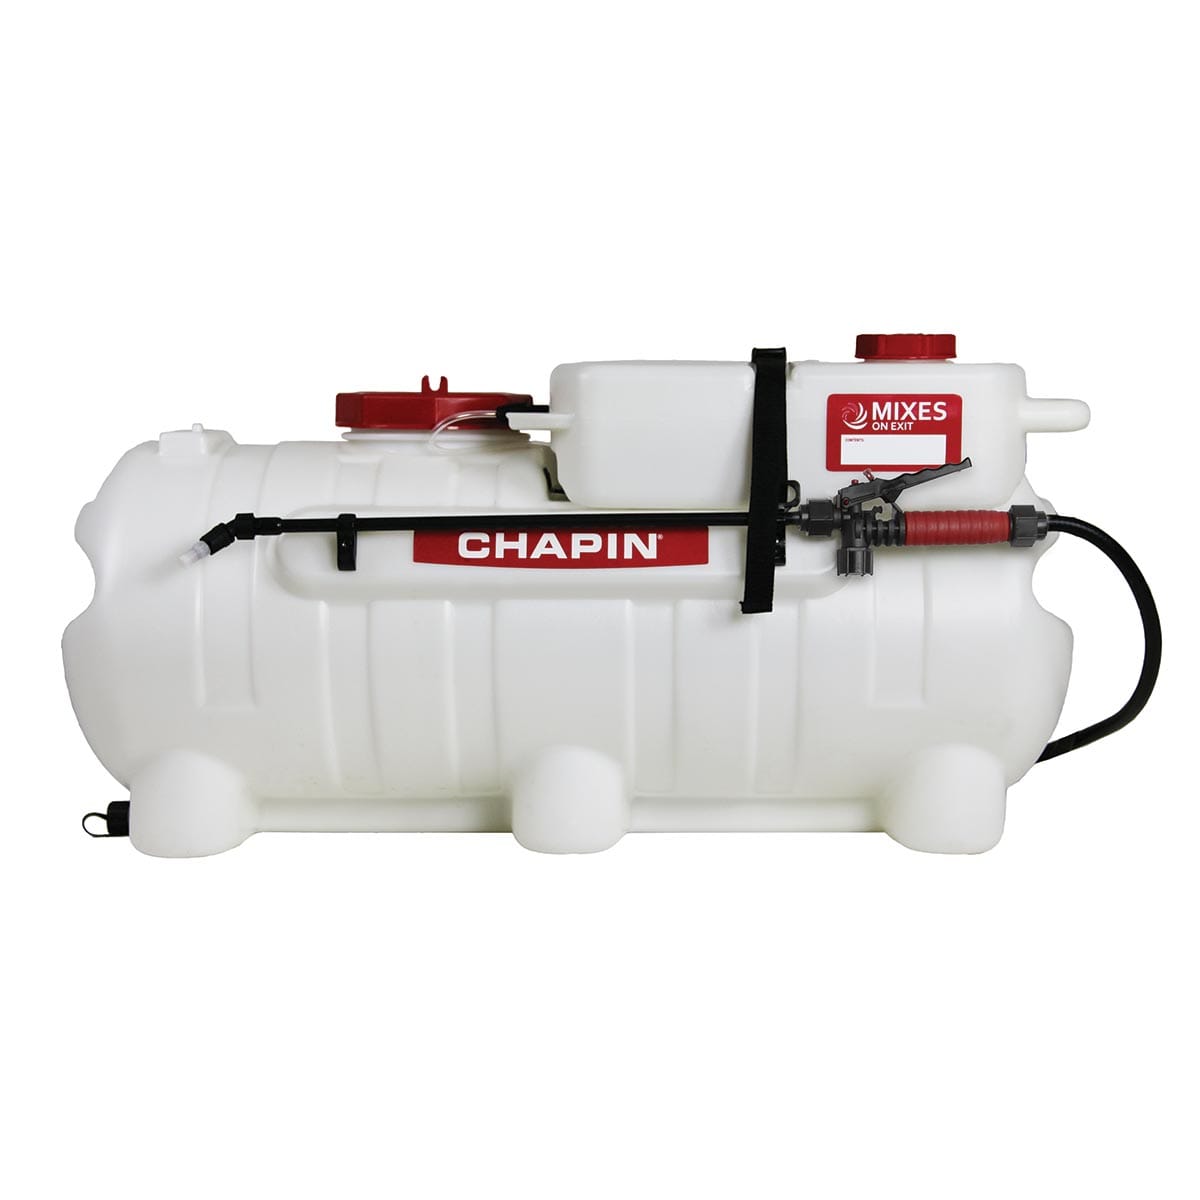 Chapin 25 Gallon Mixes On Exit™ Spot Sprayer